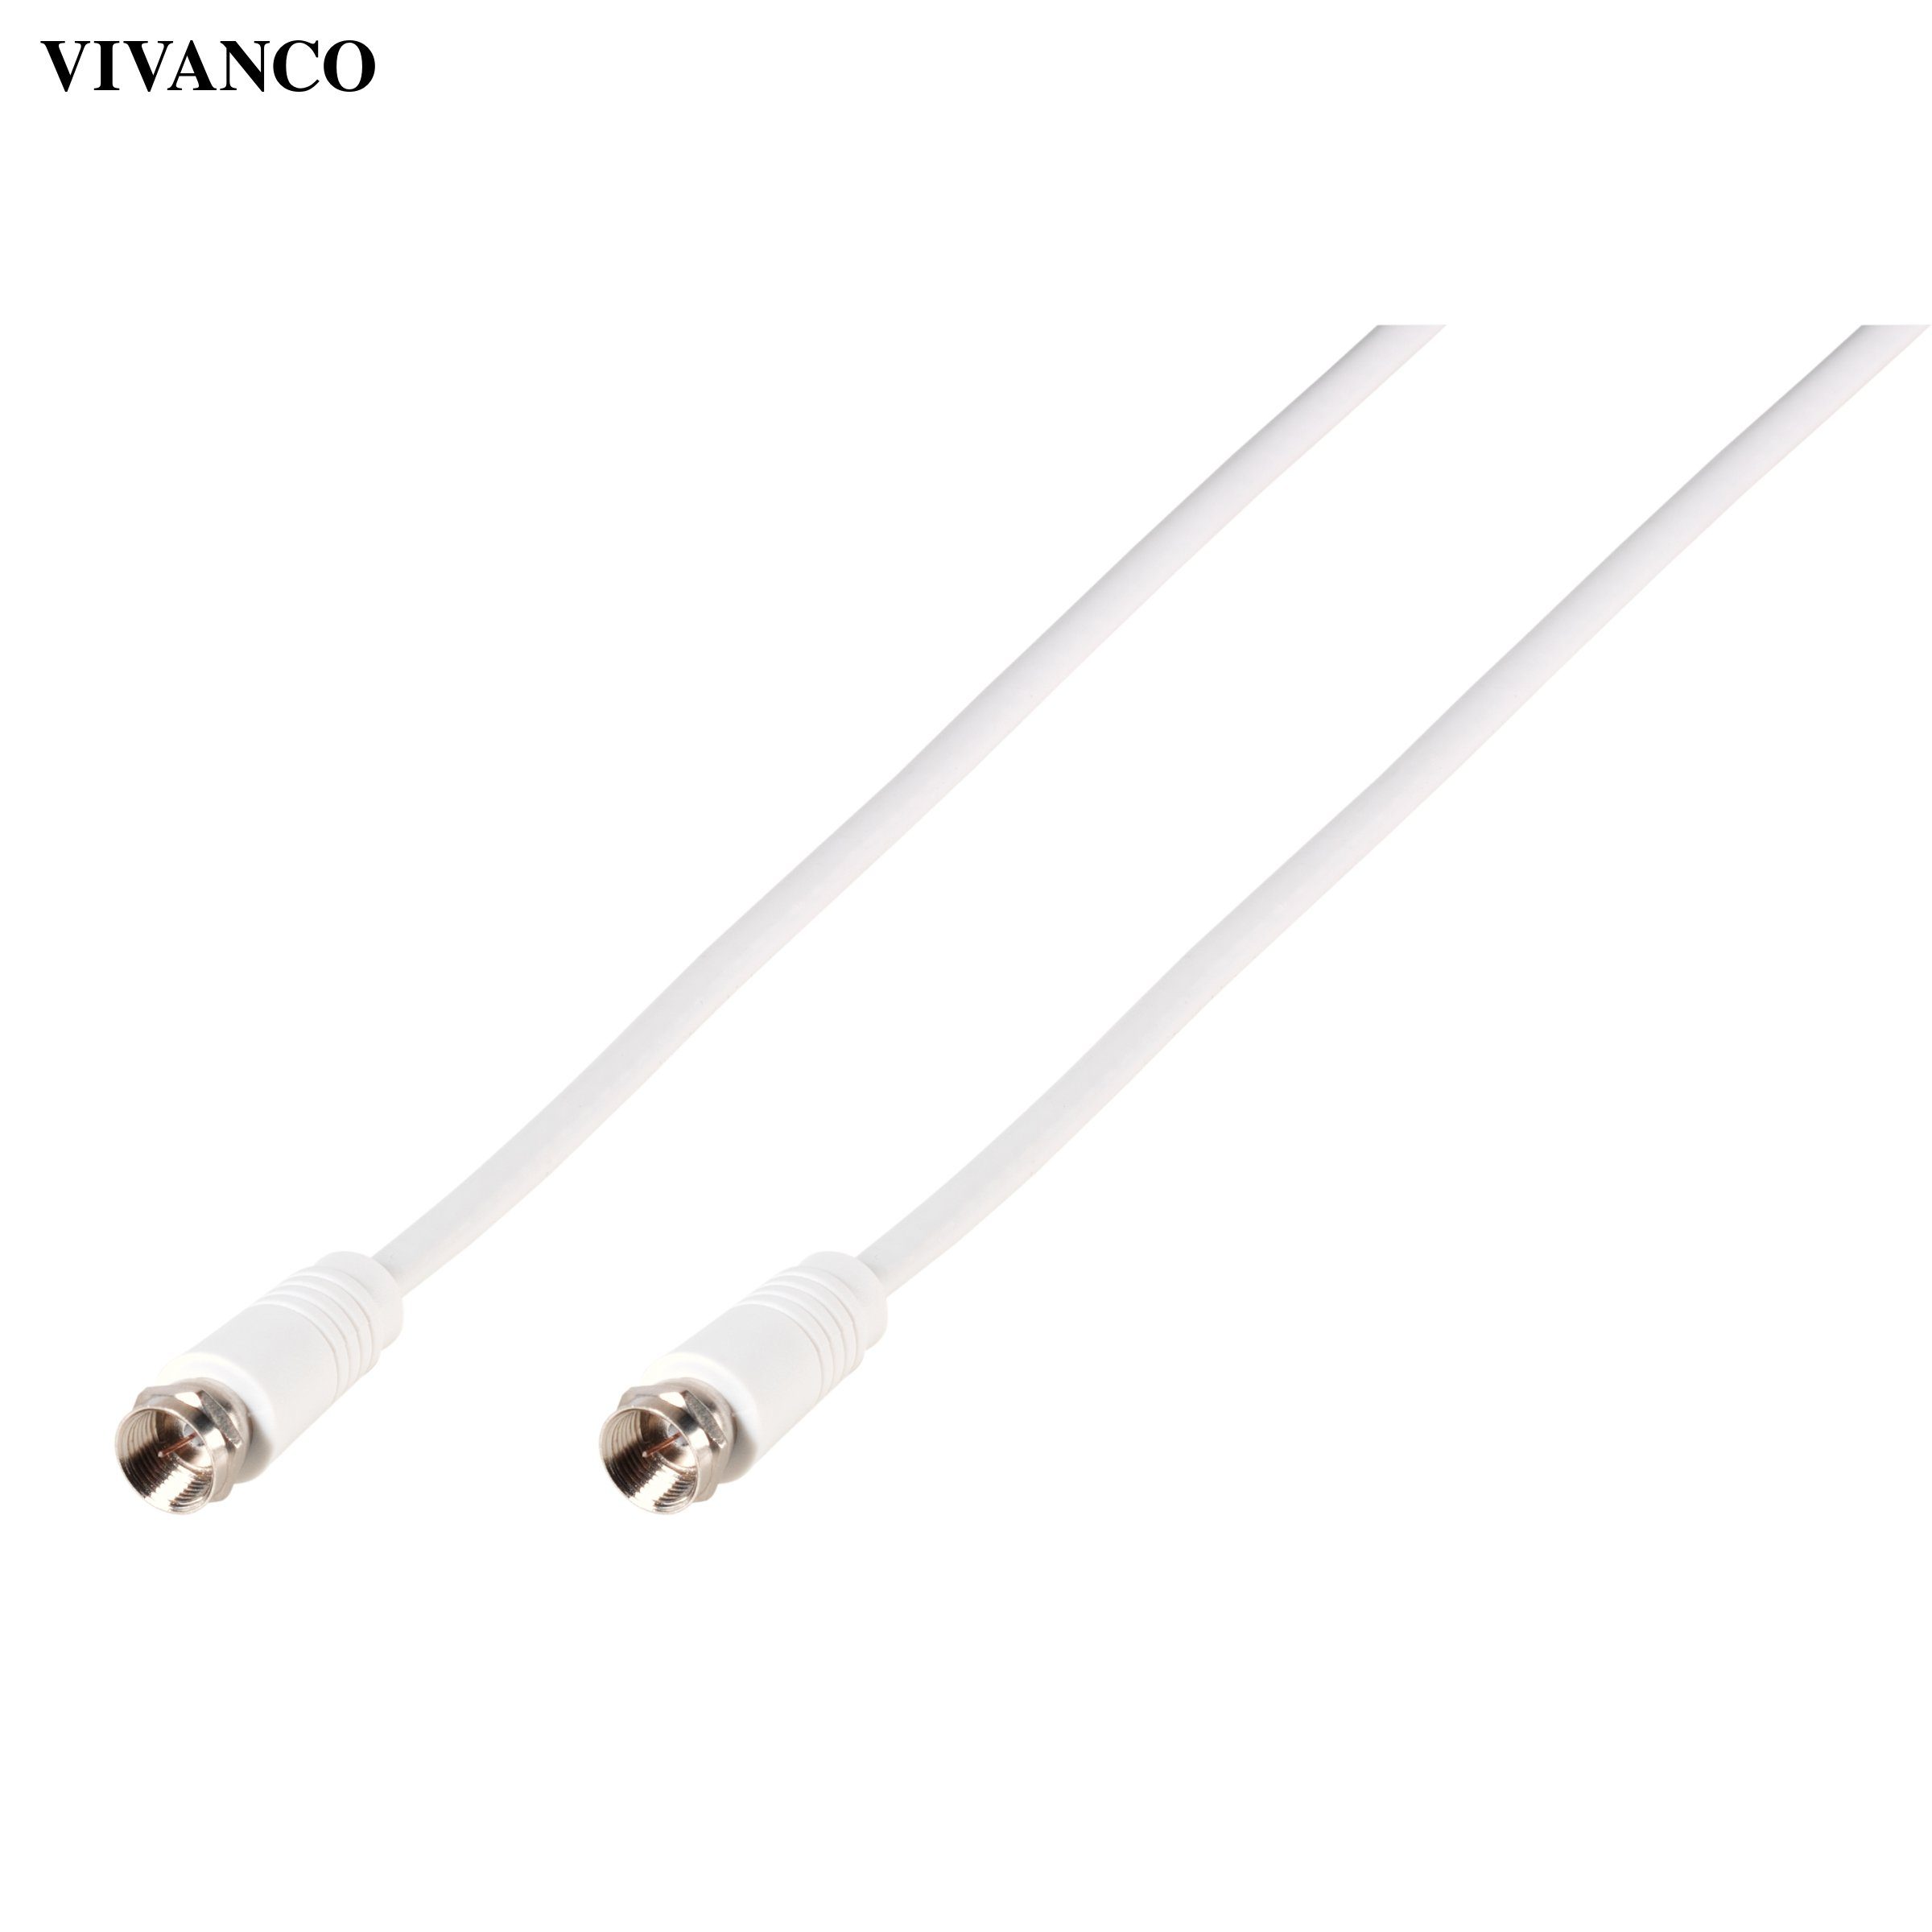 Vivanco Video-Kabel, Antennenkabel